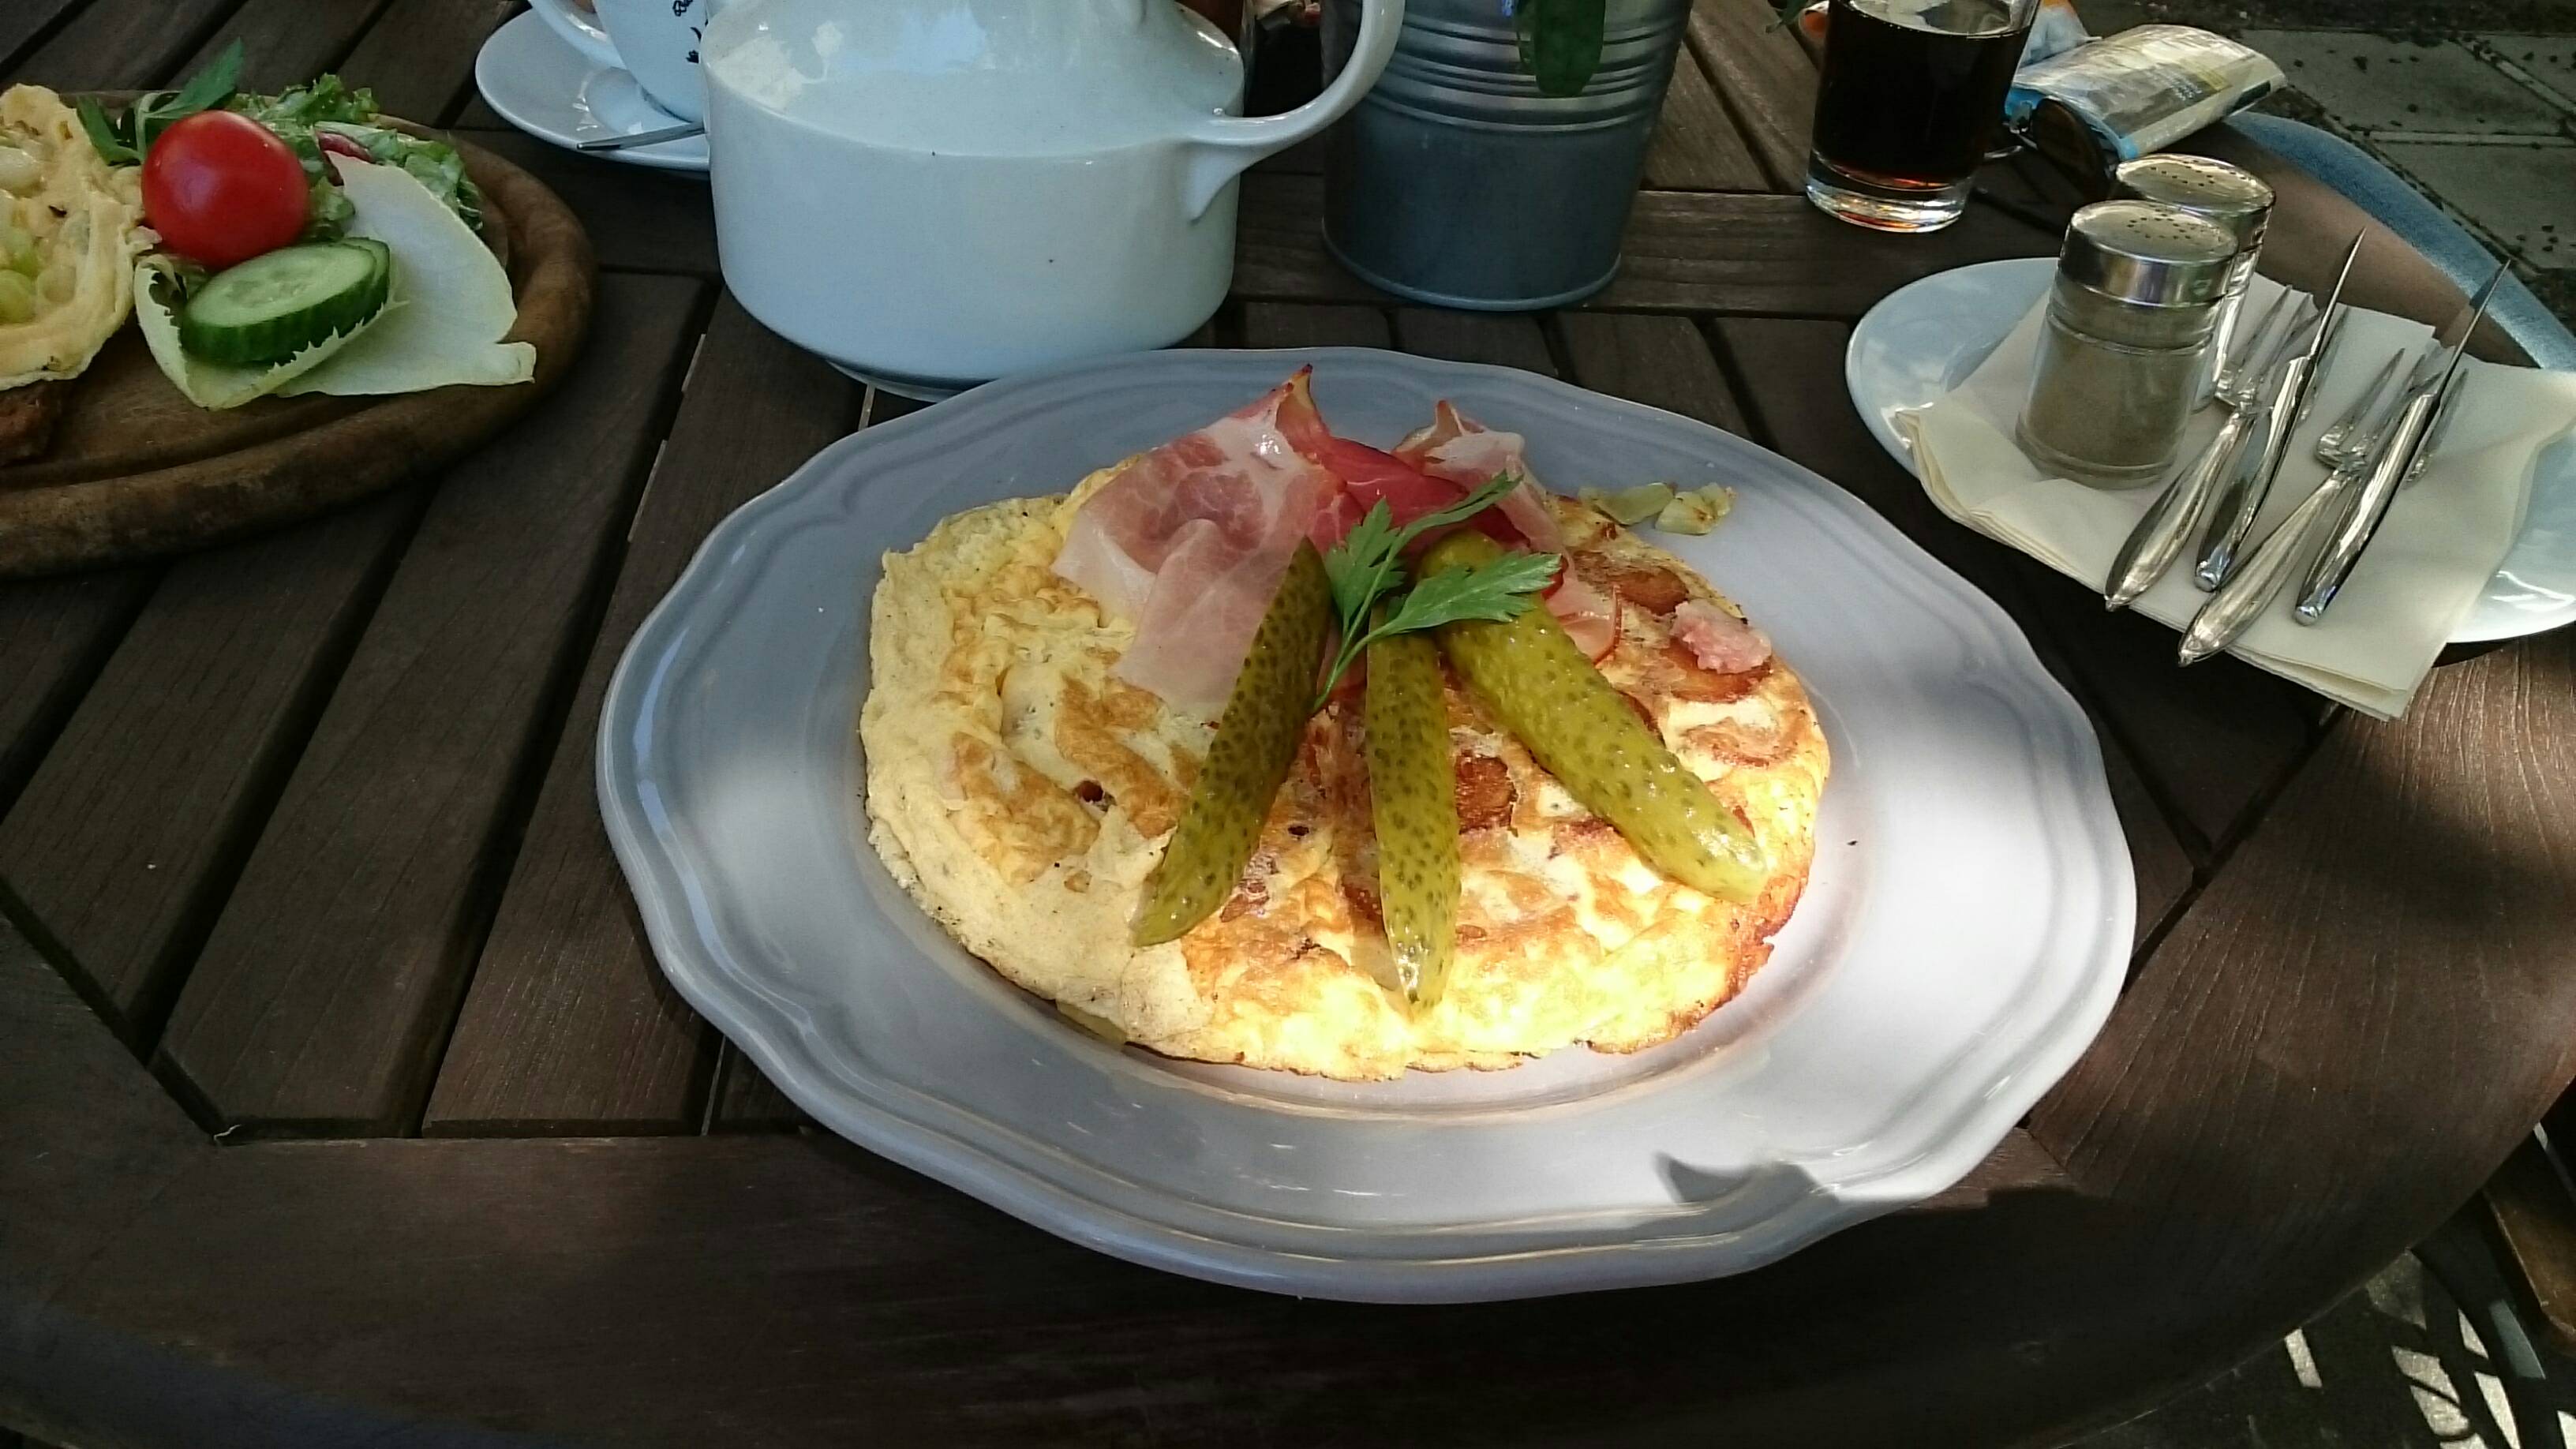 Bauernfrühstück (9,50)